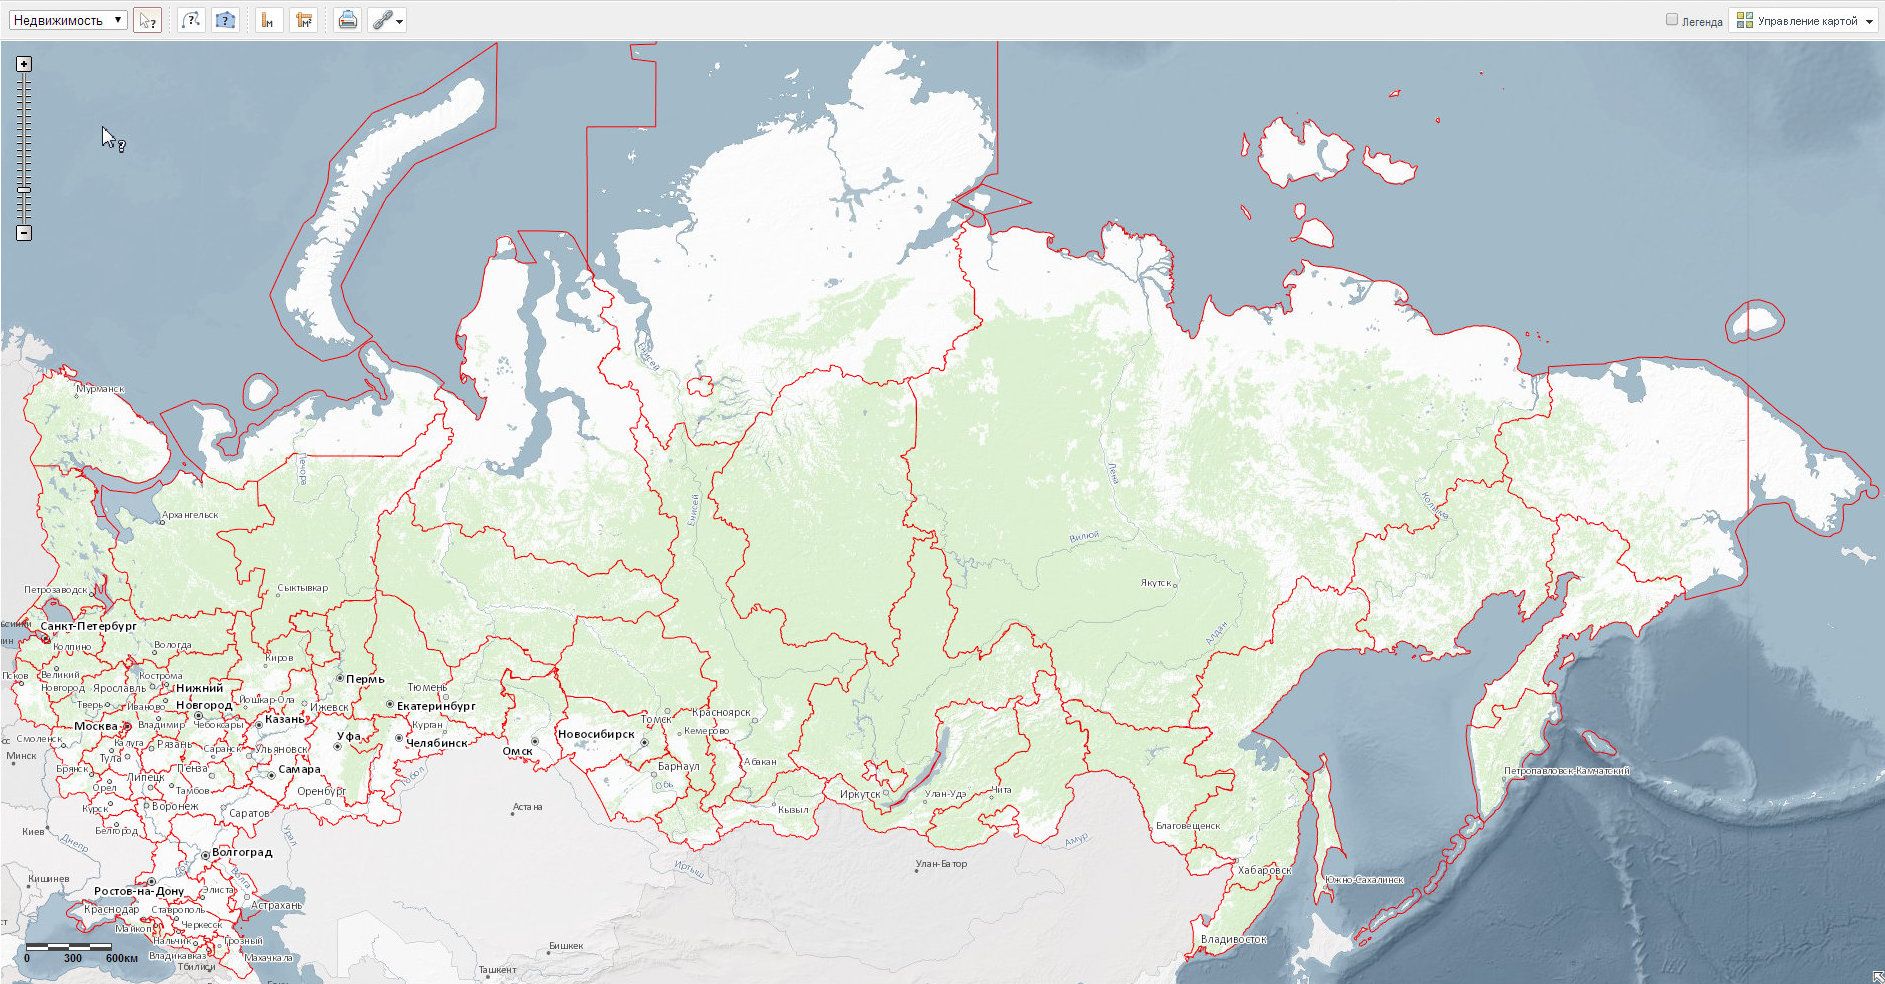 Публичная кадастровая карта России